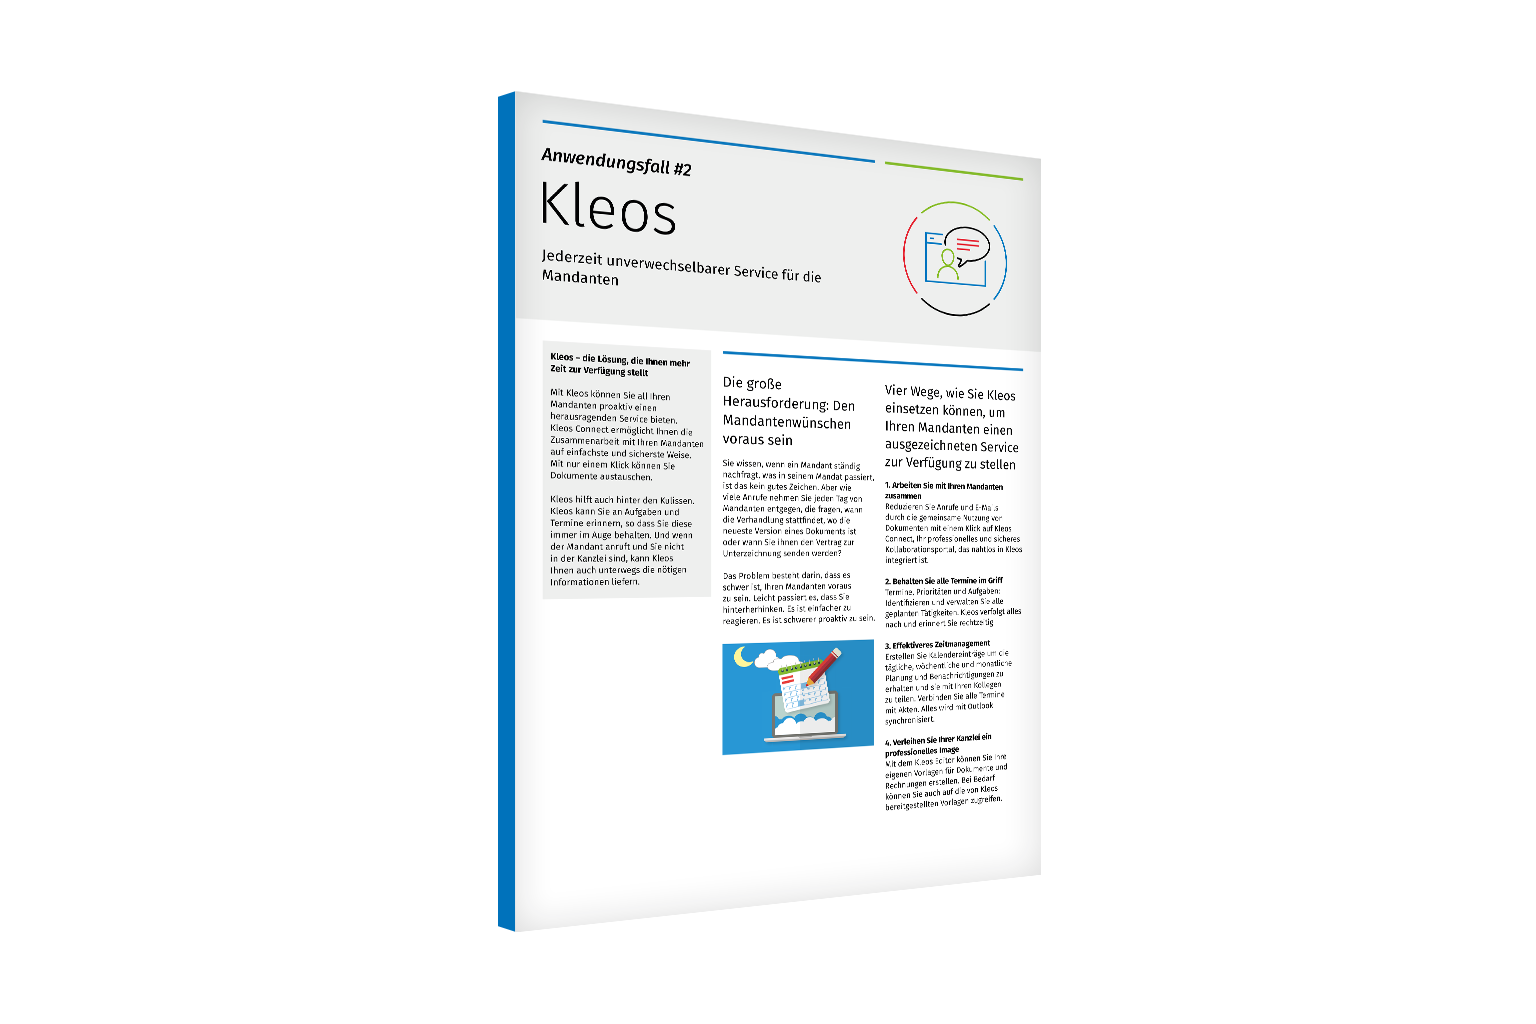 Kleos-Use-Case-2-Client-Service-DE-1536x1024